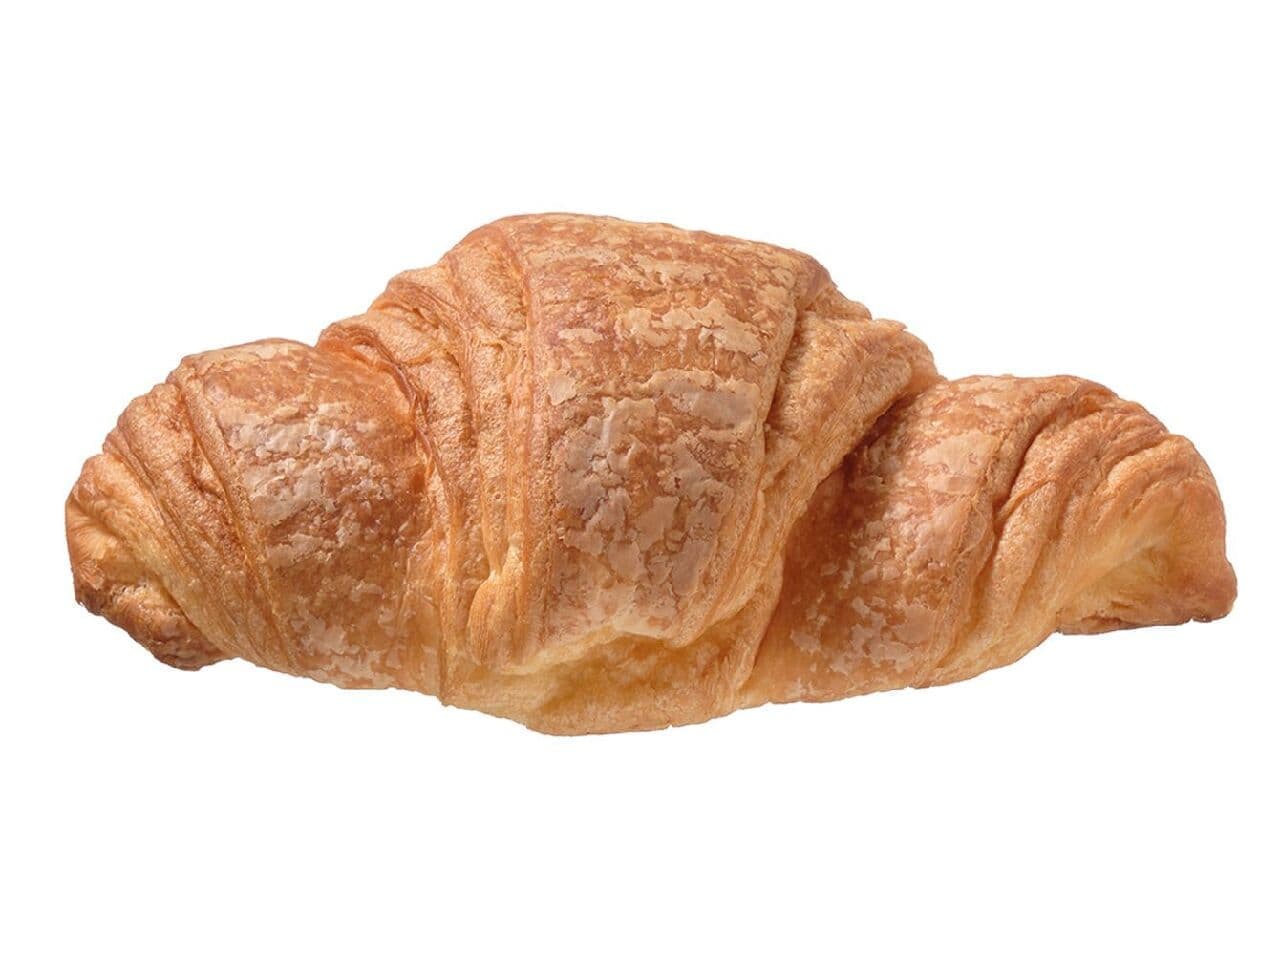 7-ELEVEN "Croissant